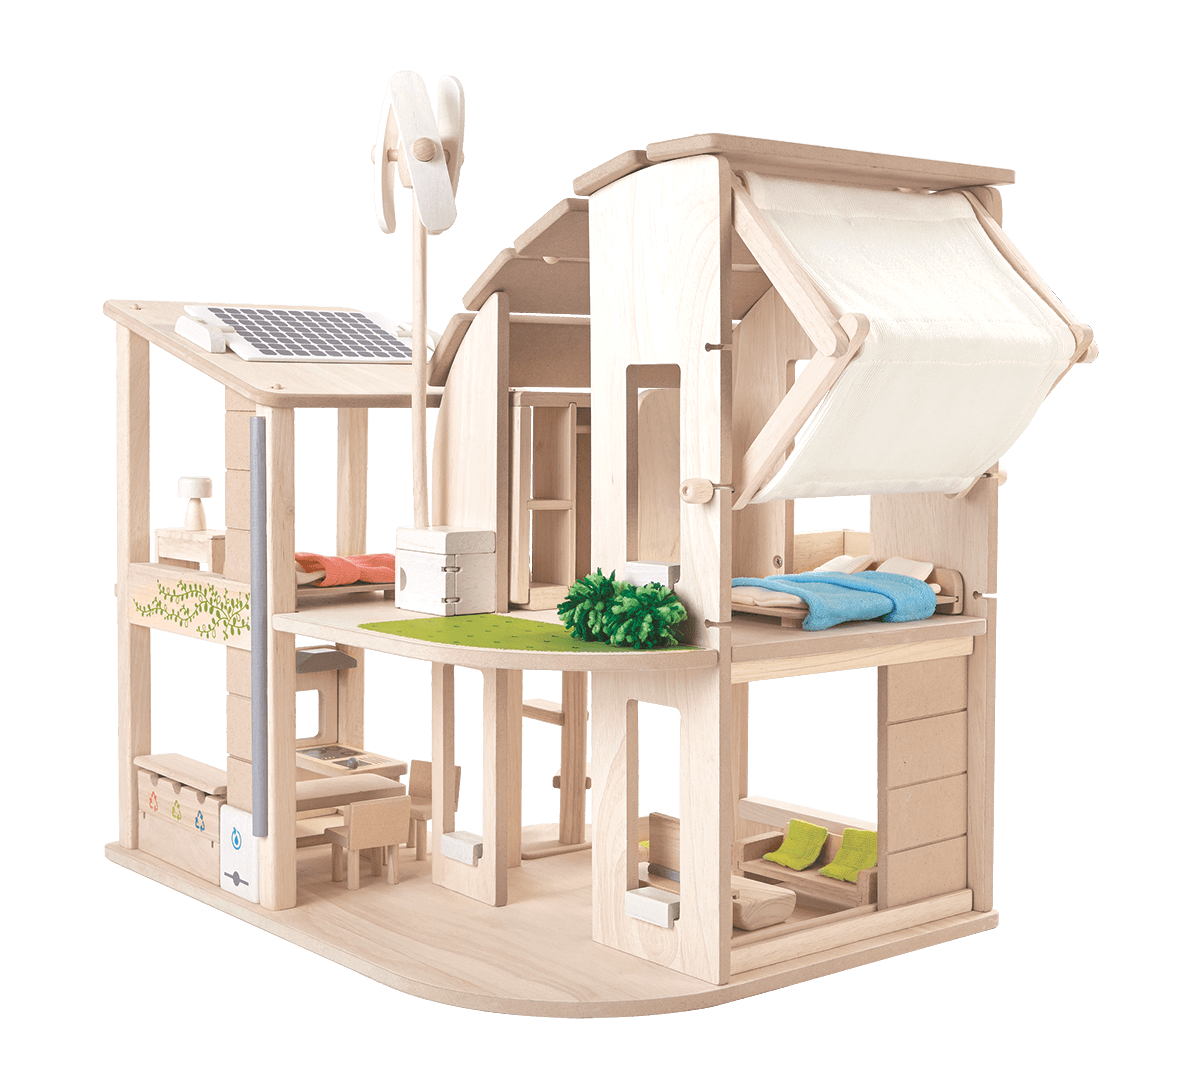 泰國Plantoys 典藏娃娃屋-綠建築雙層概念宅